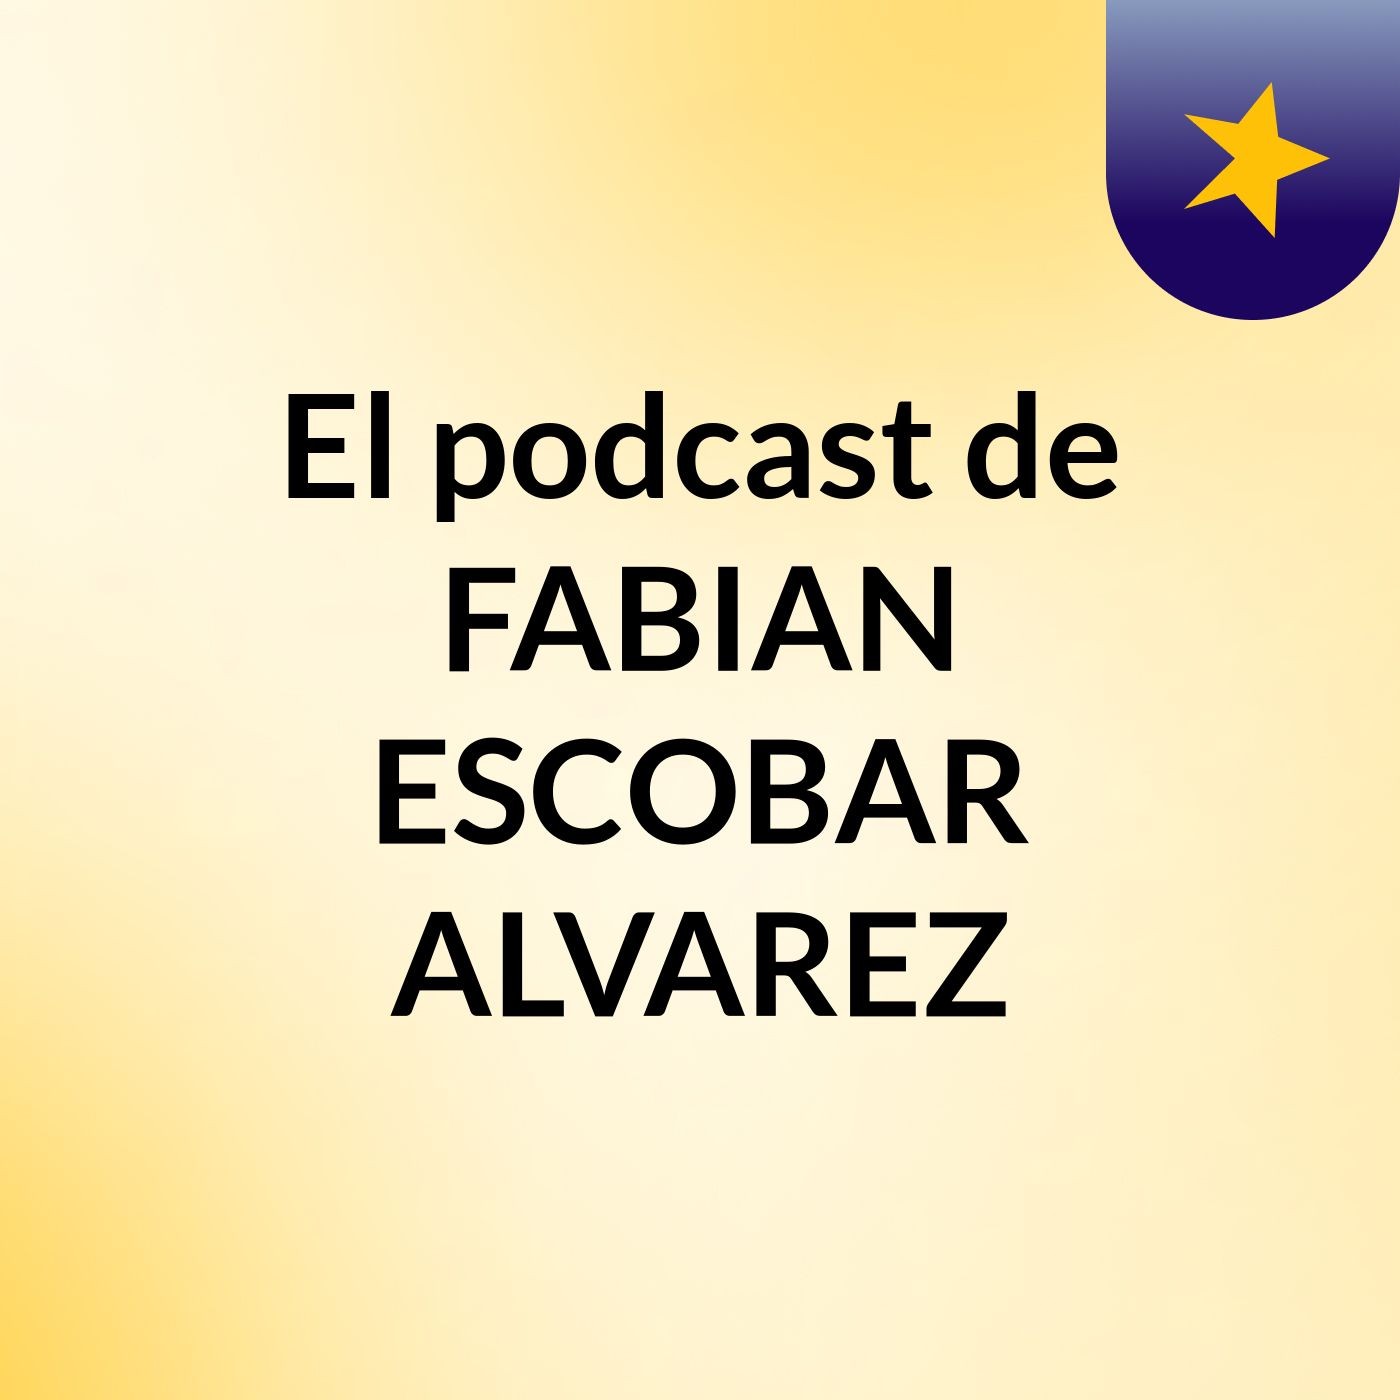 El podcast de FABIAN ESCOBAR ALVAREZ